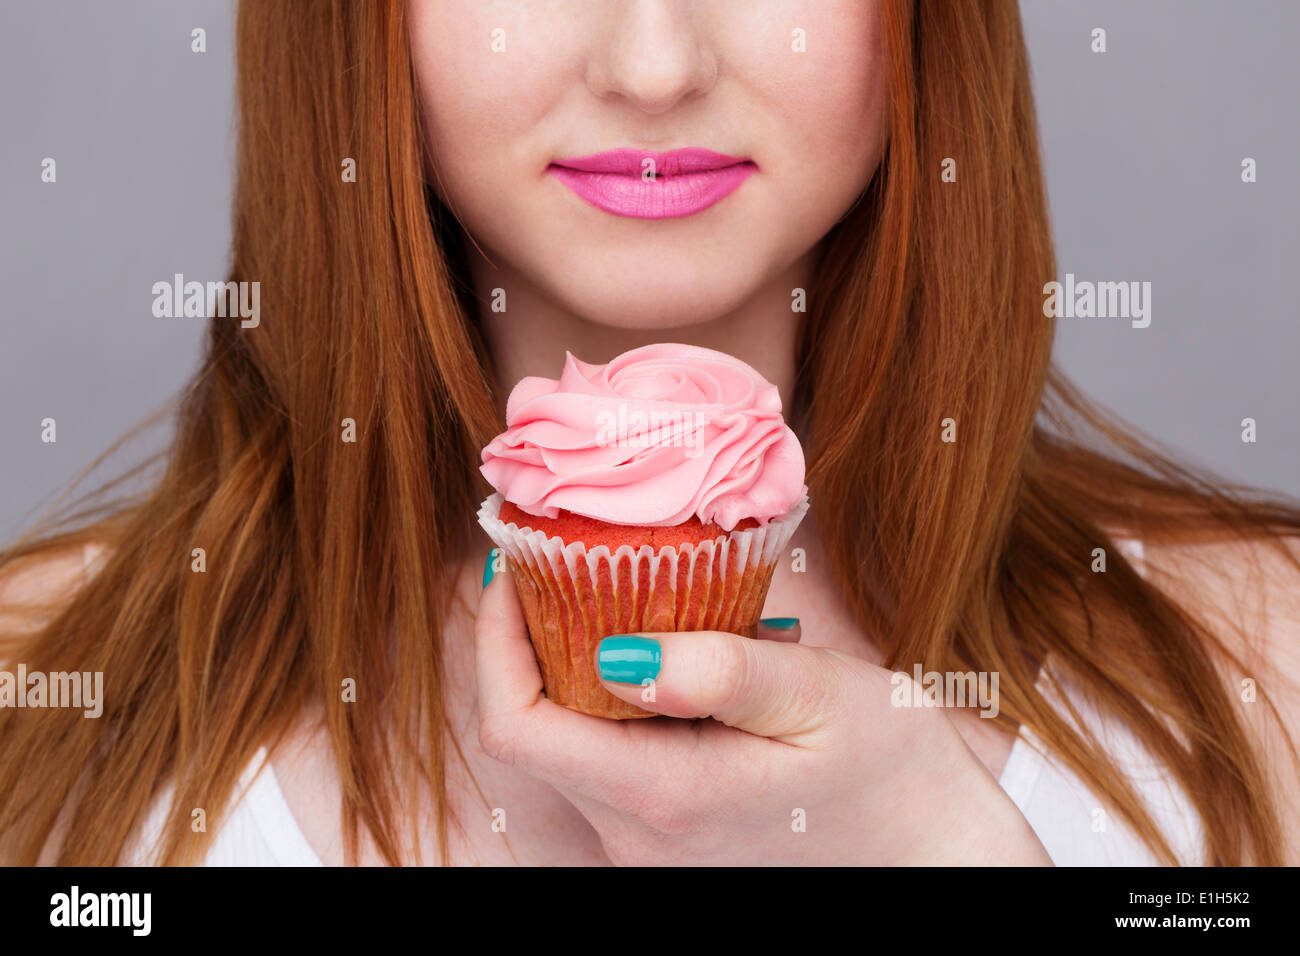 Bild junge Frau mit Cupcake beschnitten Stockfoto